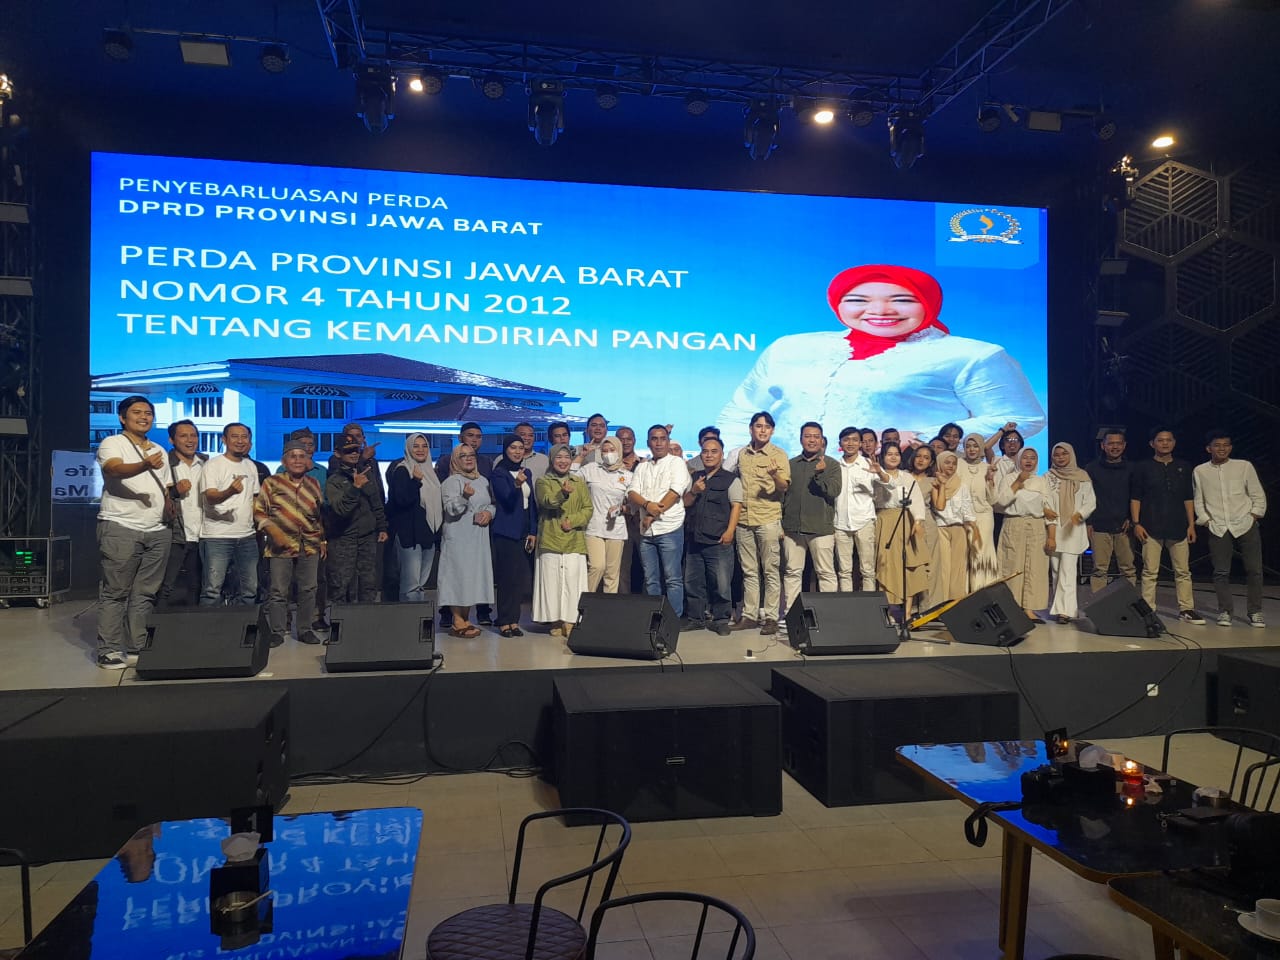 Anggota DPRD Provinsi Jawa Barat yang juga sebagai kader Gerindra Lina Ruslinawati melaksanakan kegiatan Penyebarluasan Peraturan Daerah (Perda) no. 4 Tahun 2012 Tentang Kemandirian Pangan Daerah kepada para tokoh masyarakatv